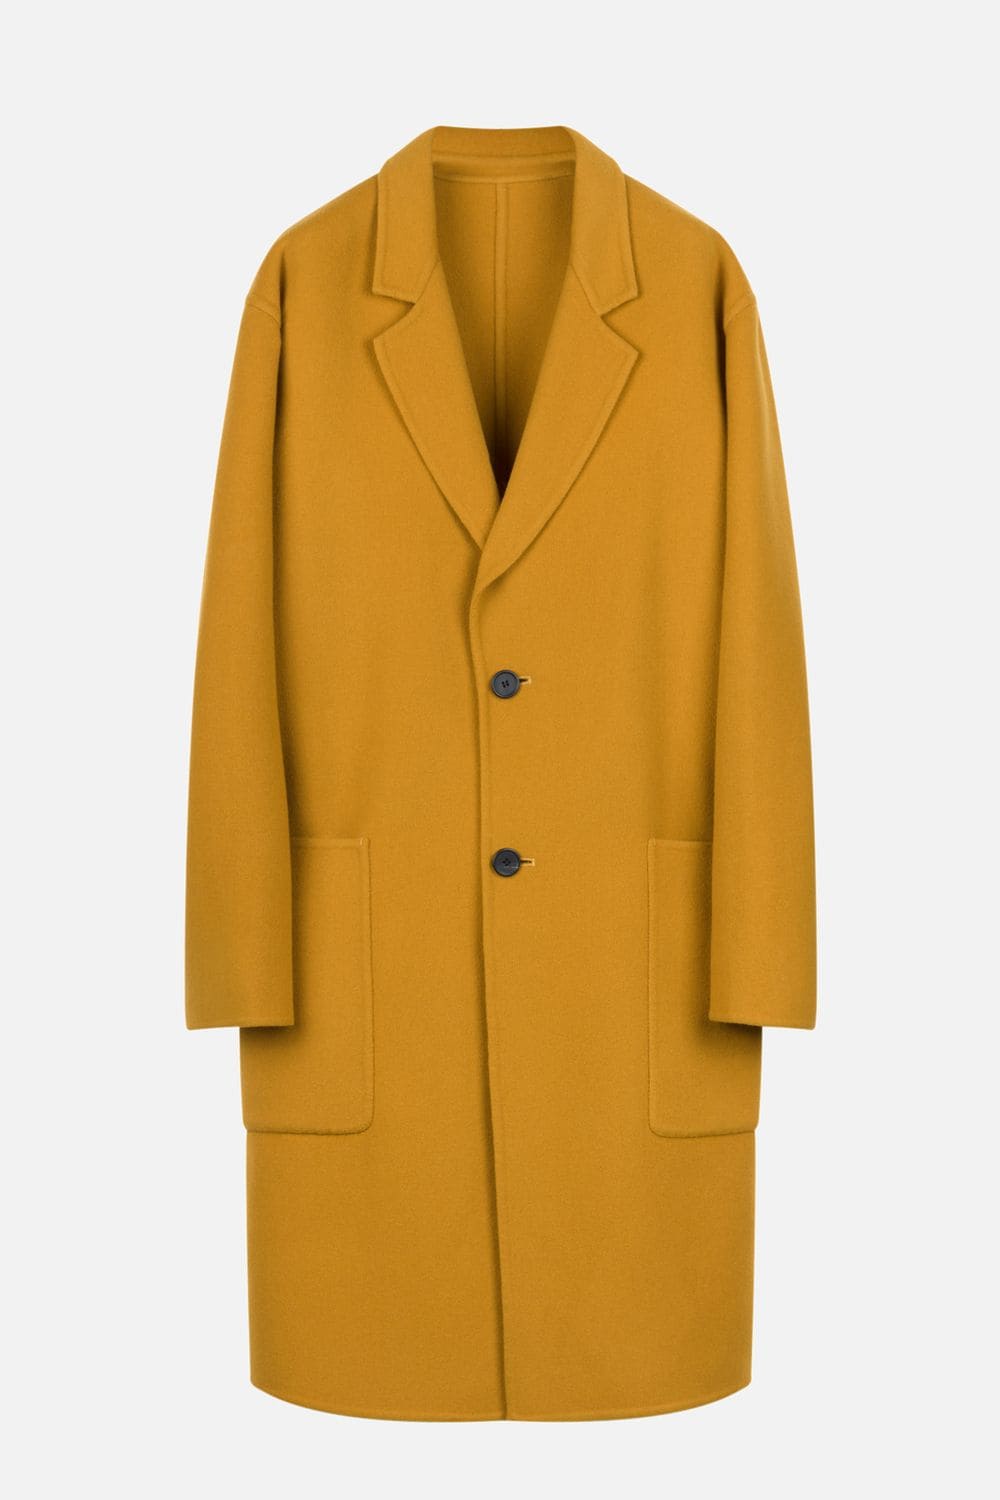 Ami Alexandre Mattiussi Yellow oversized coat